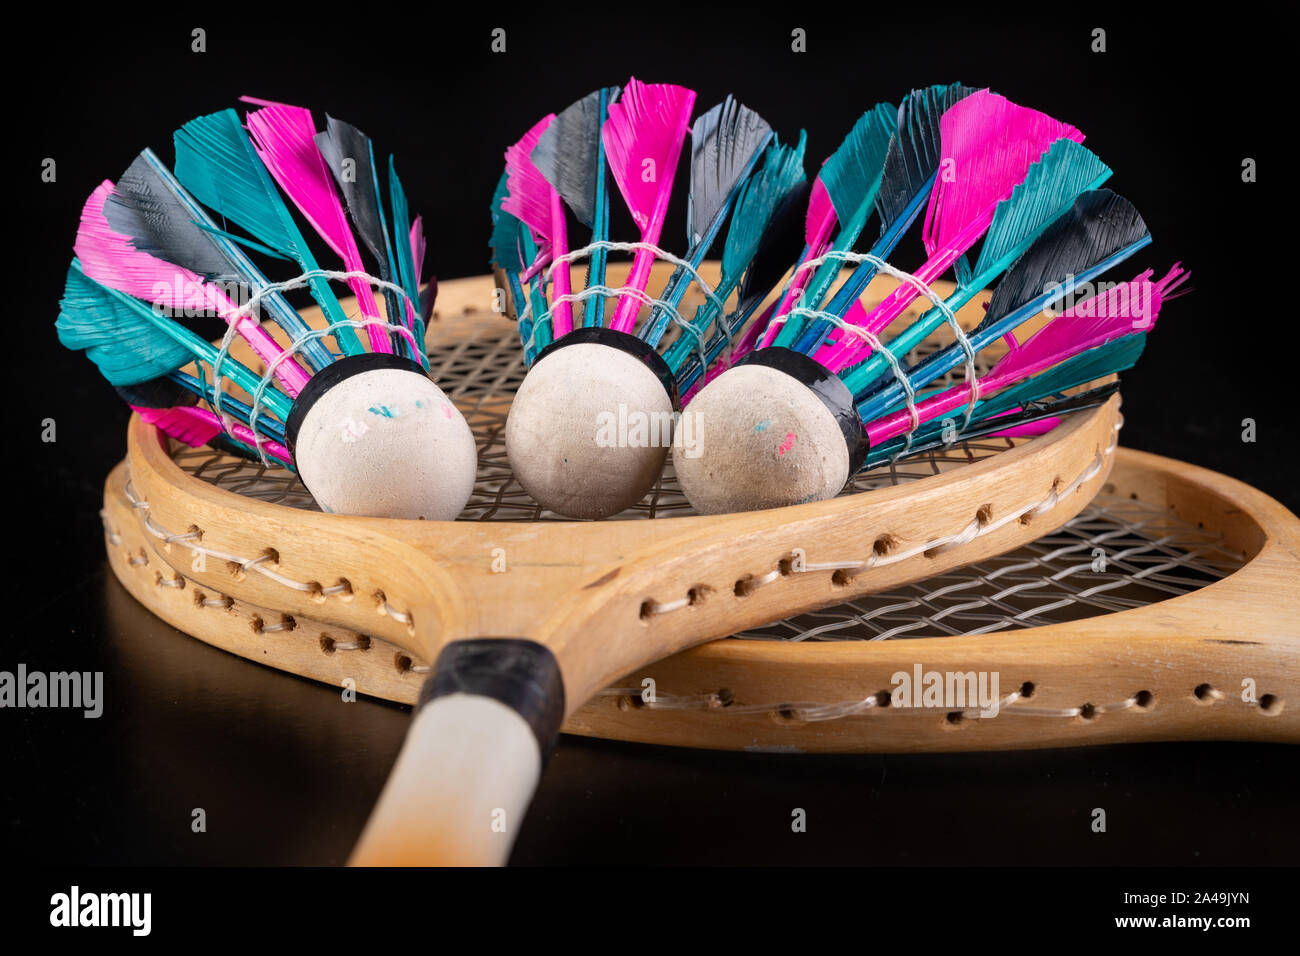 Raquettes de badminton en bois et volants. Accessoires pour jeux d'équipe  dans le hall. Fond sombre Photo Stock - Alamy